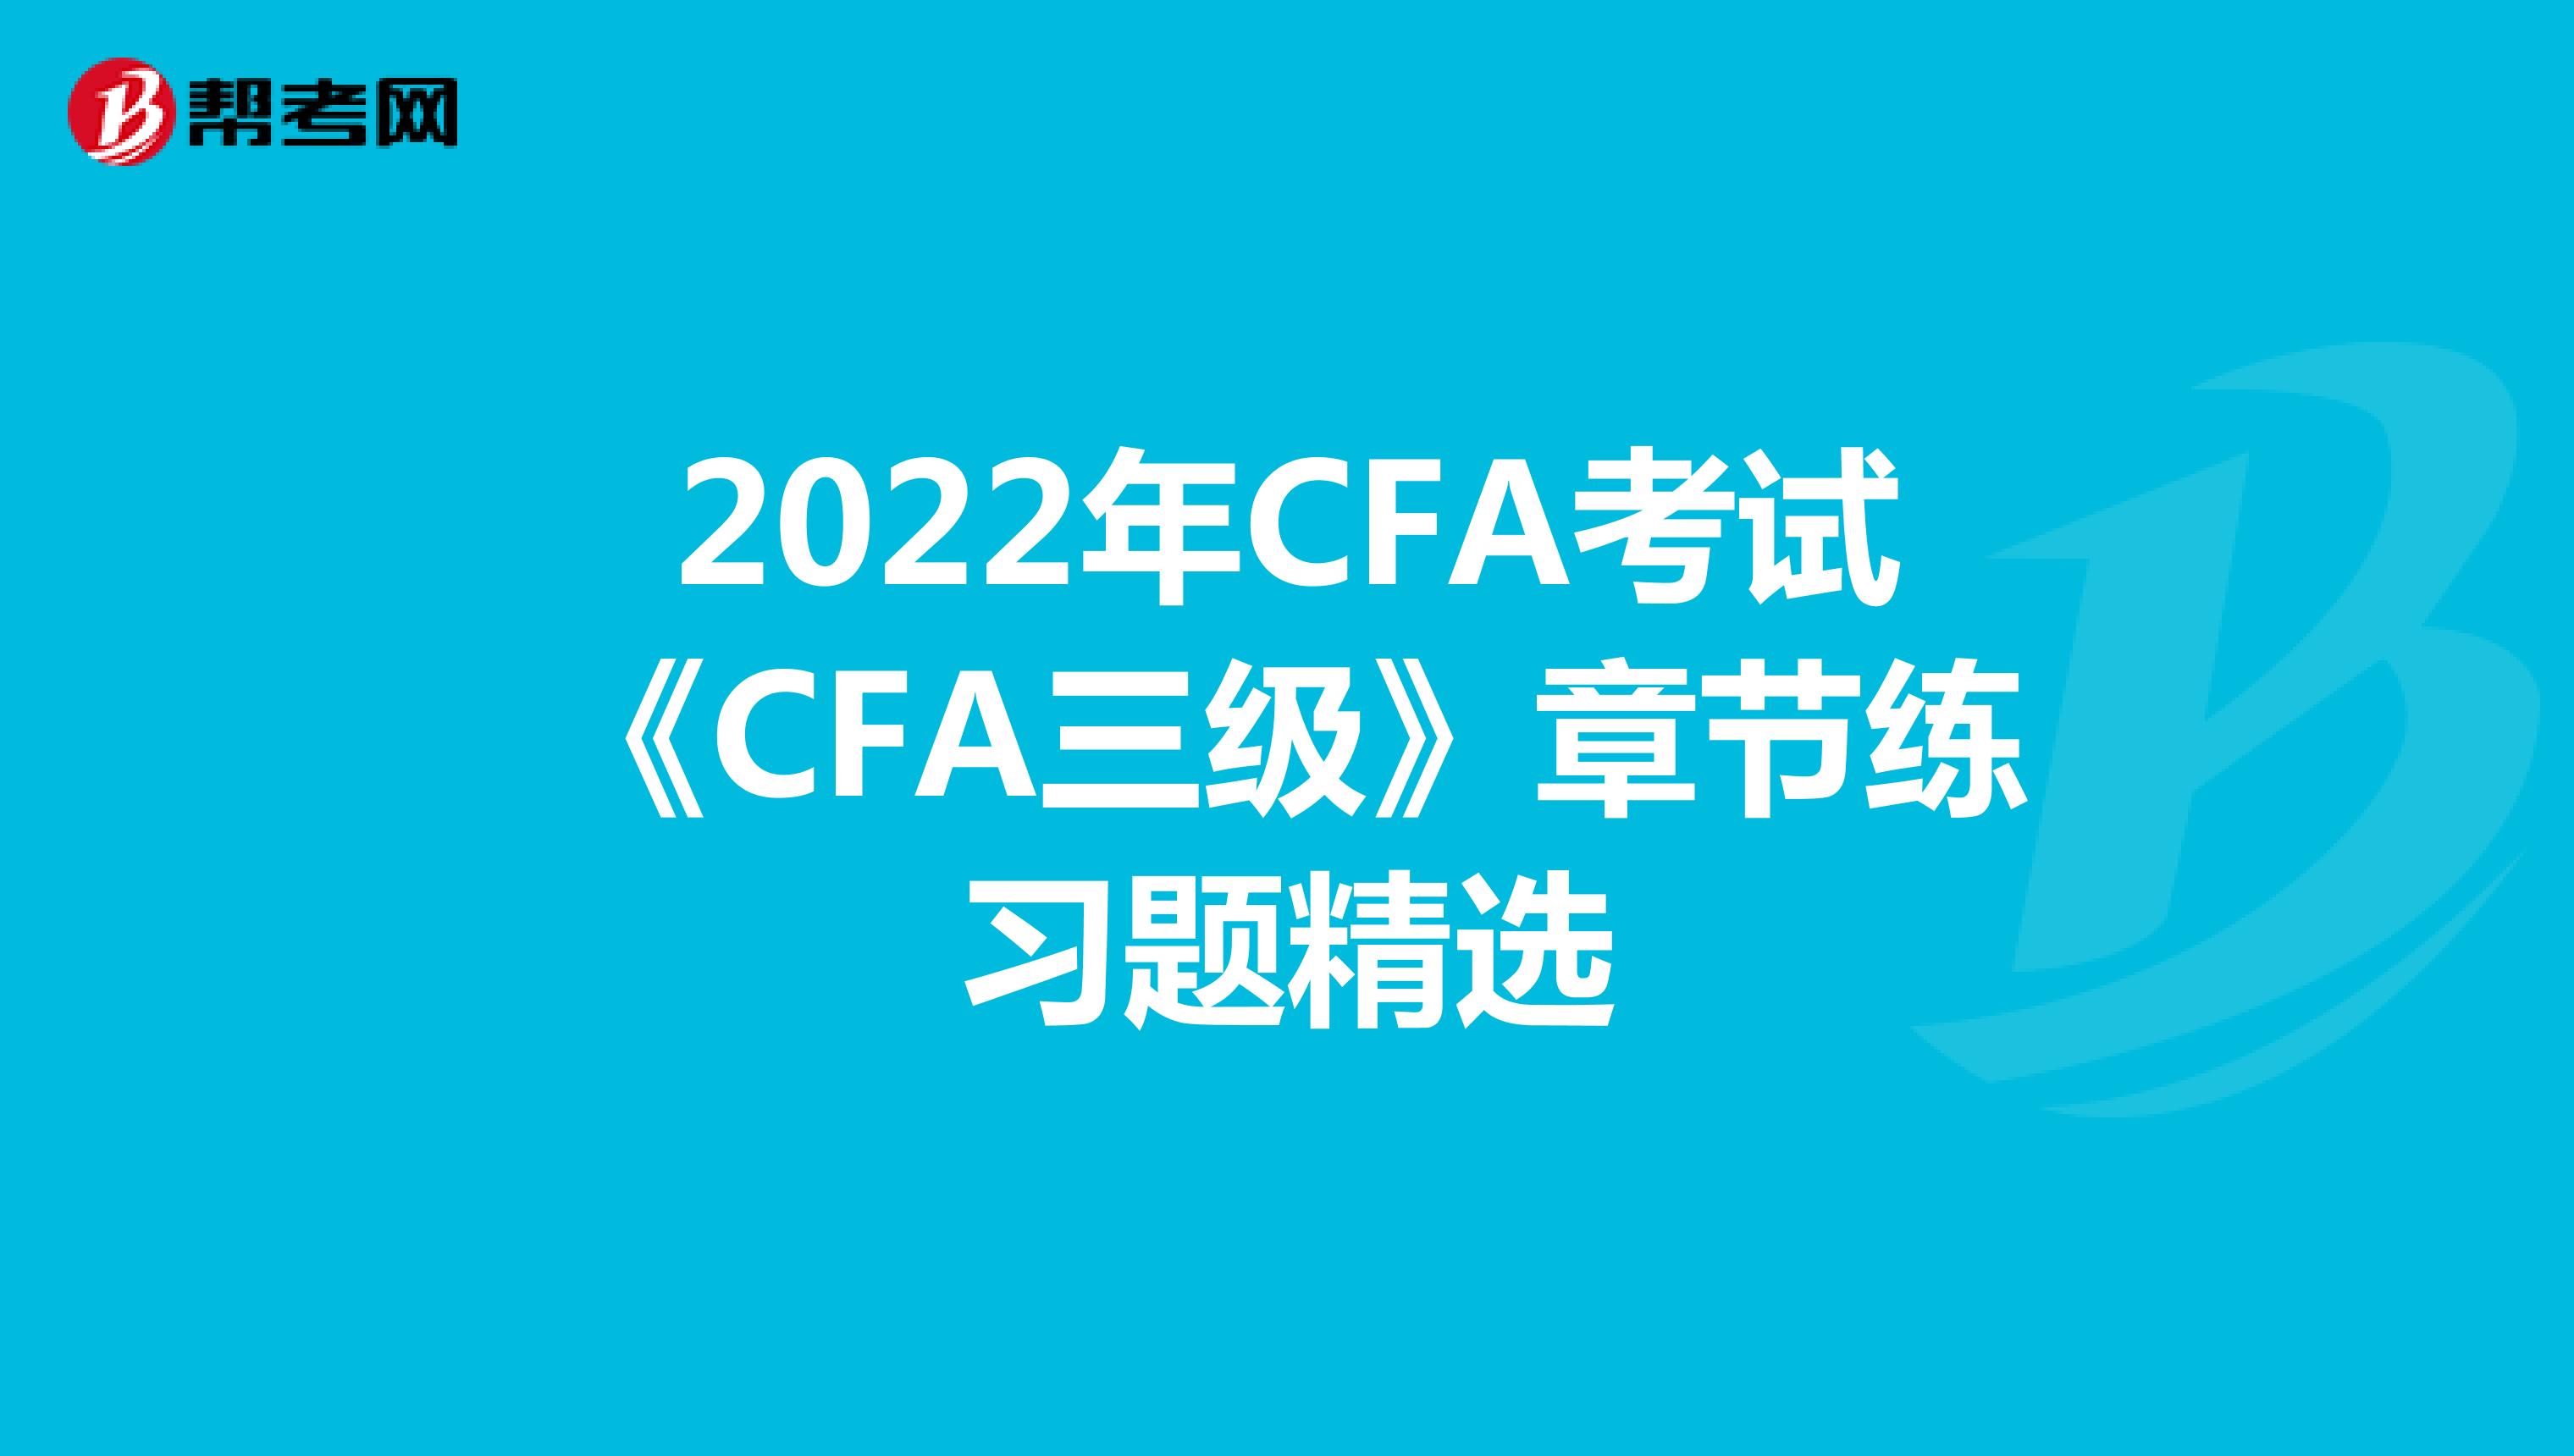 2022年CFA考试《CFA三级》章节练习题精选